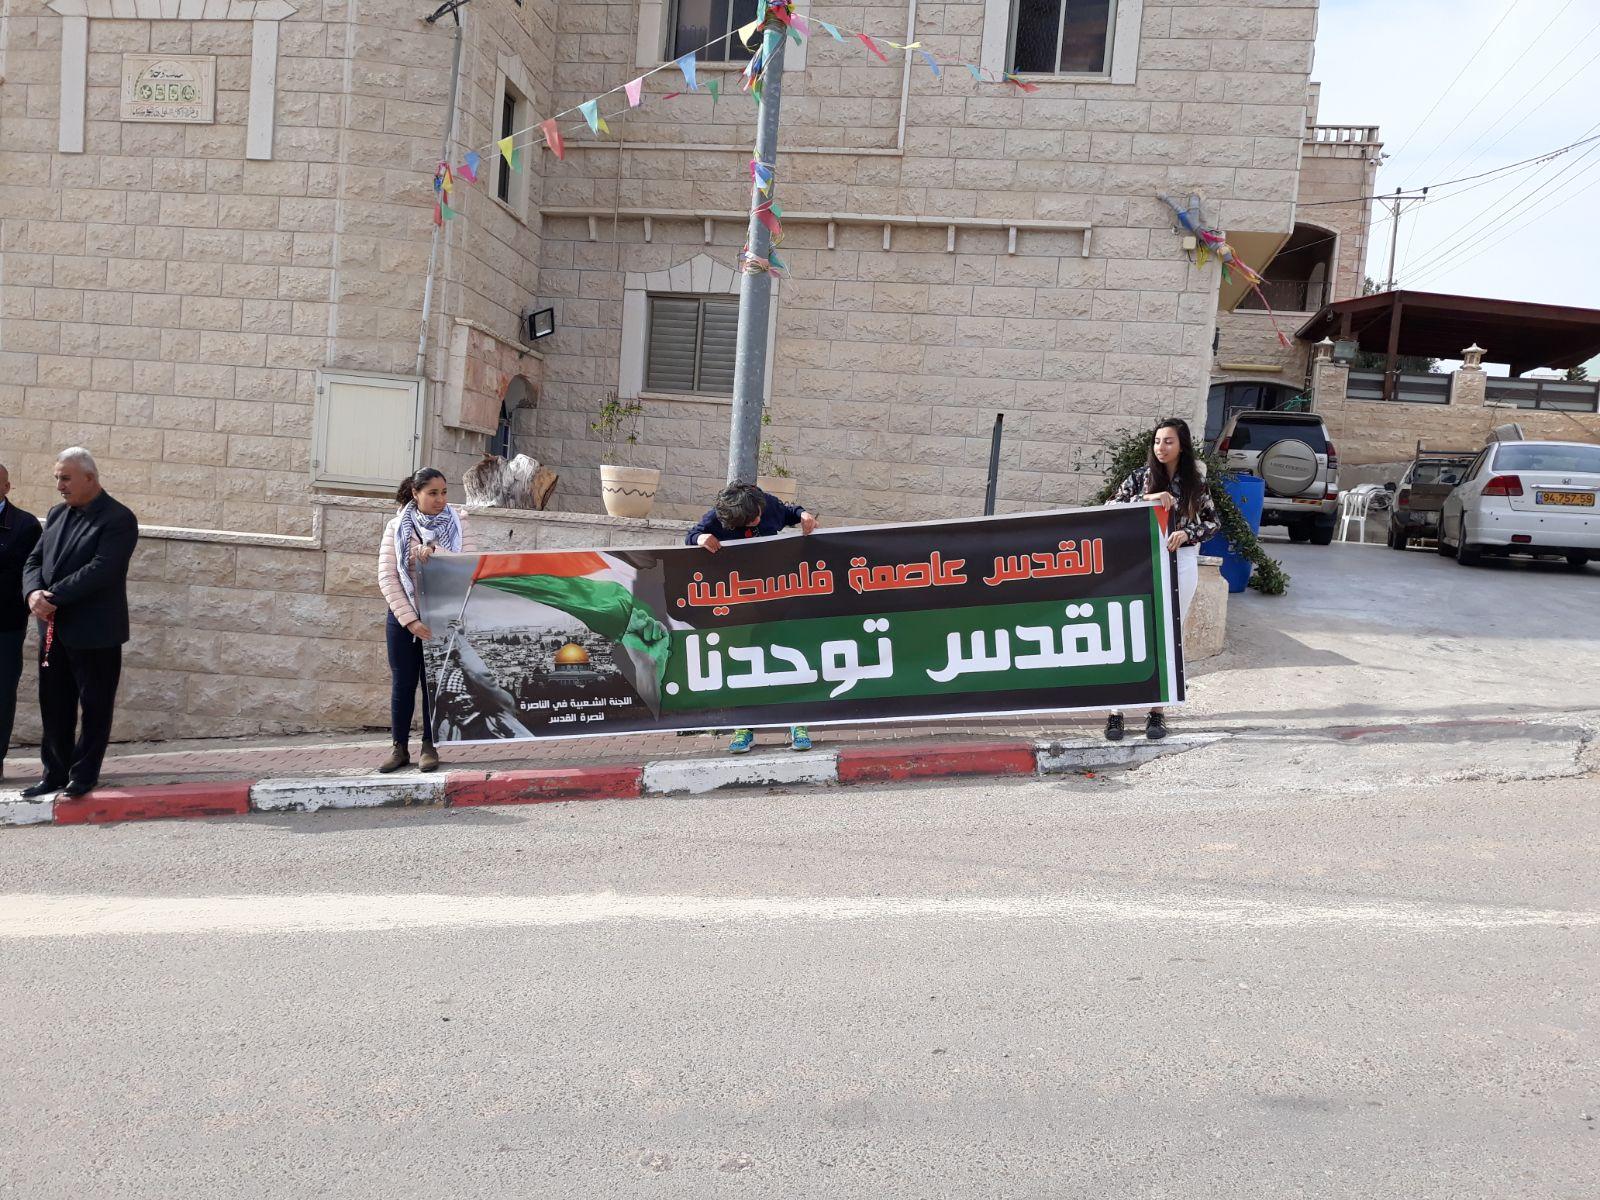  بركة: يتحتّم على فلسطينيي الداخل استقبال نتنياهو   بالصرامي على وجهه   2017122812295487